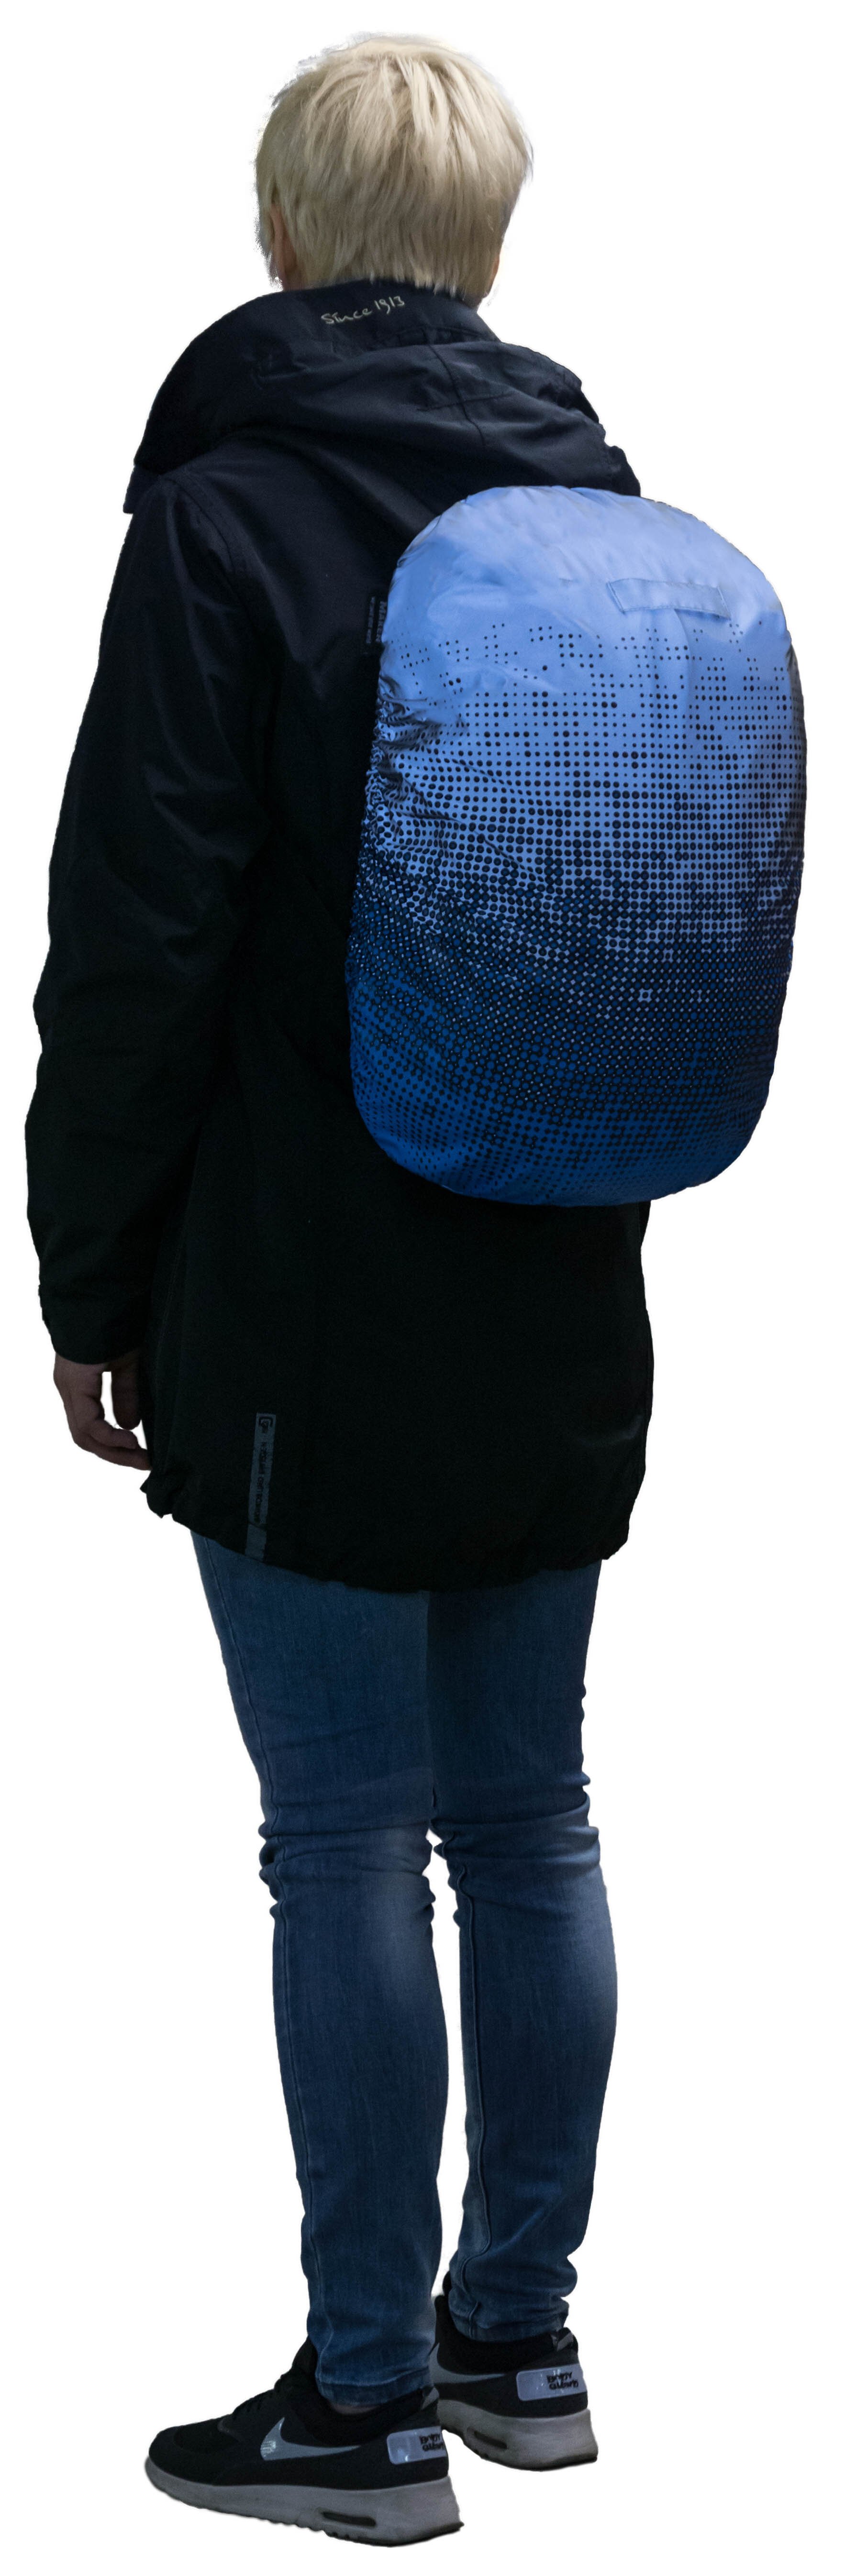 Reflektierender Bagcover silber-blau reflektierend